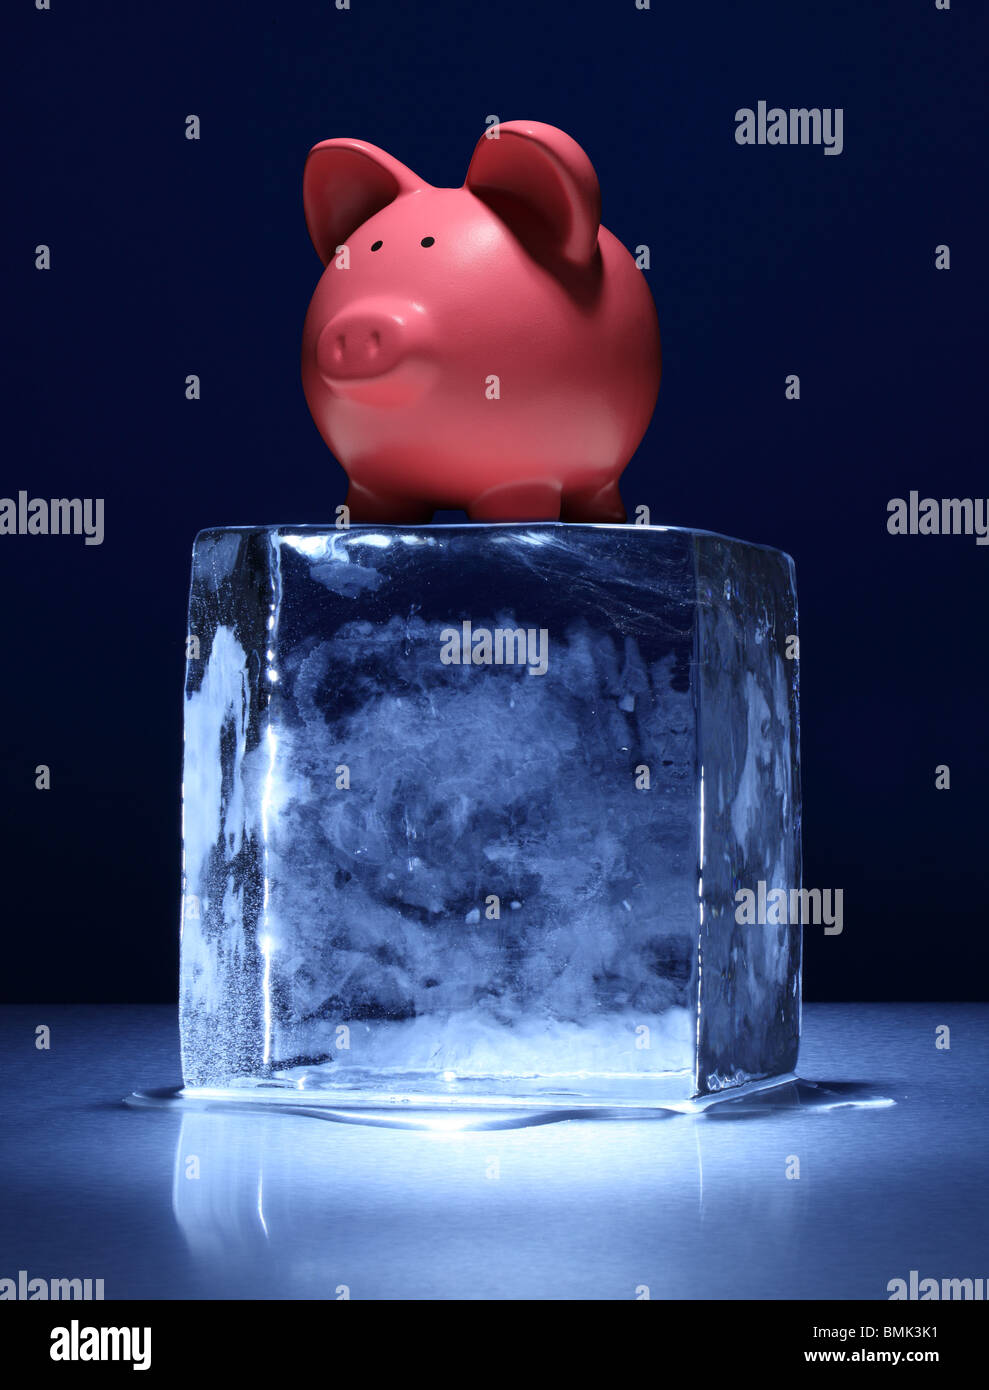 La glace d'un bloc de glace avec un pink piggy bank on top Banque D'Images